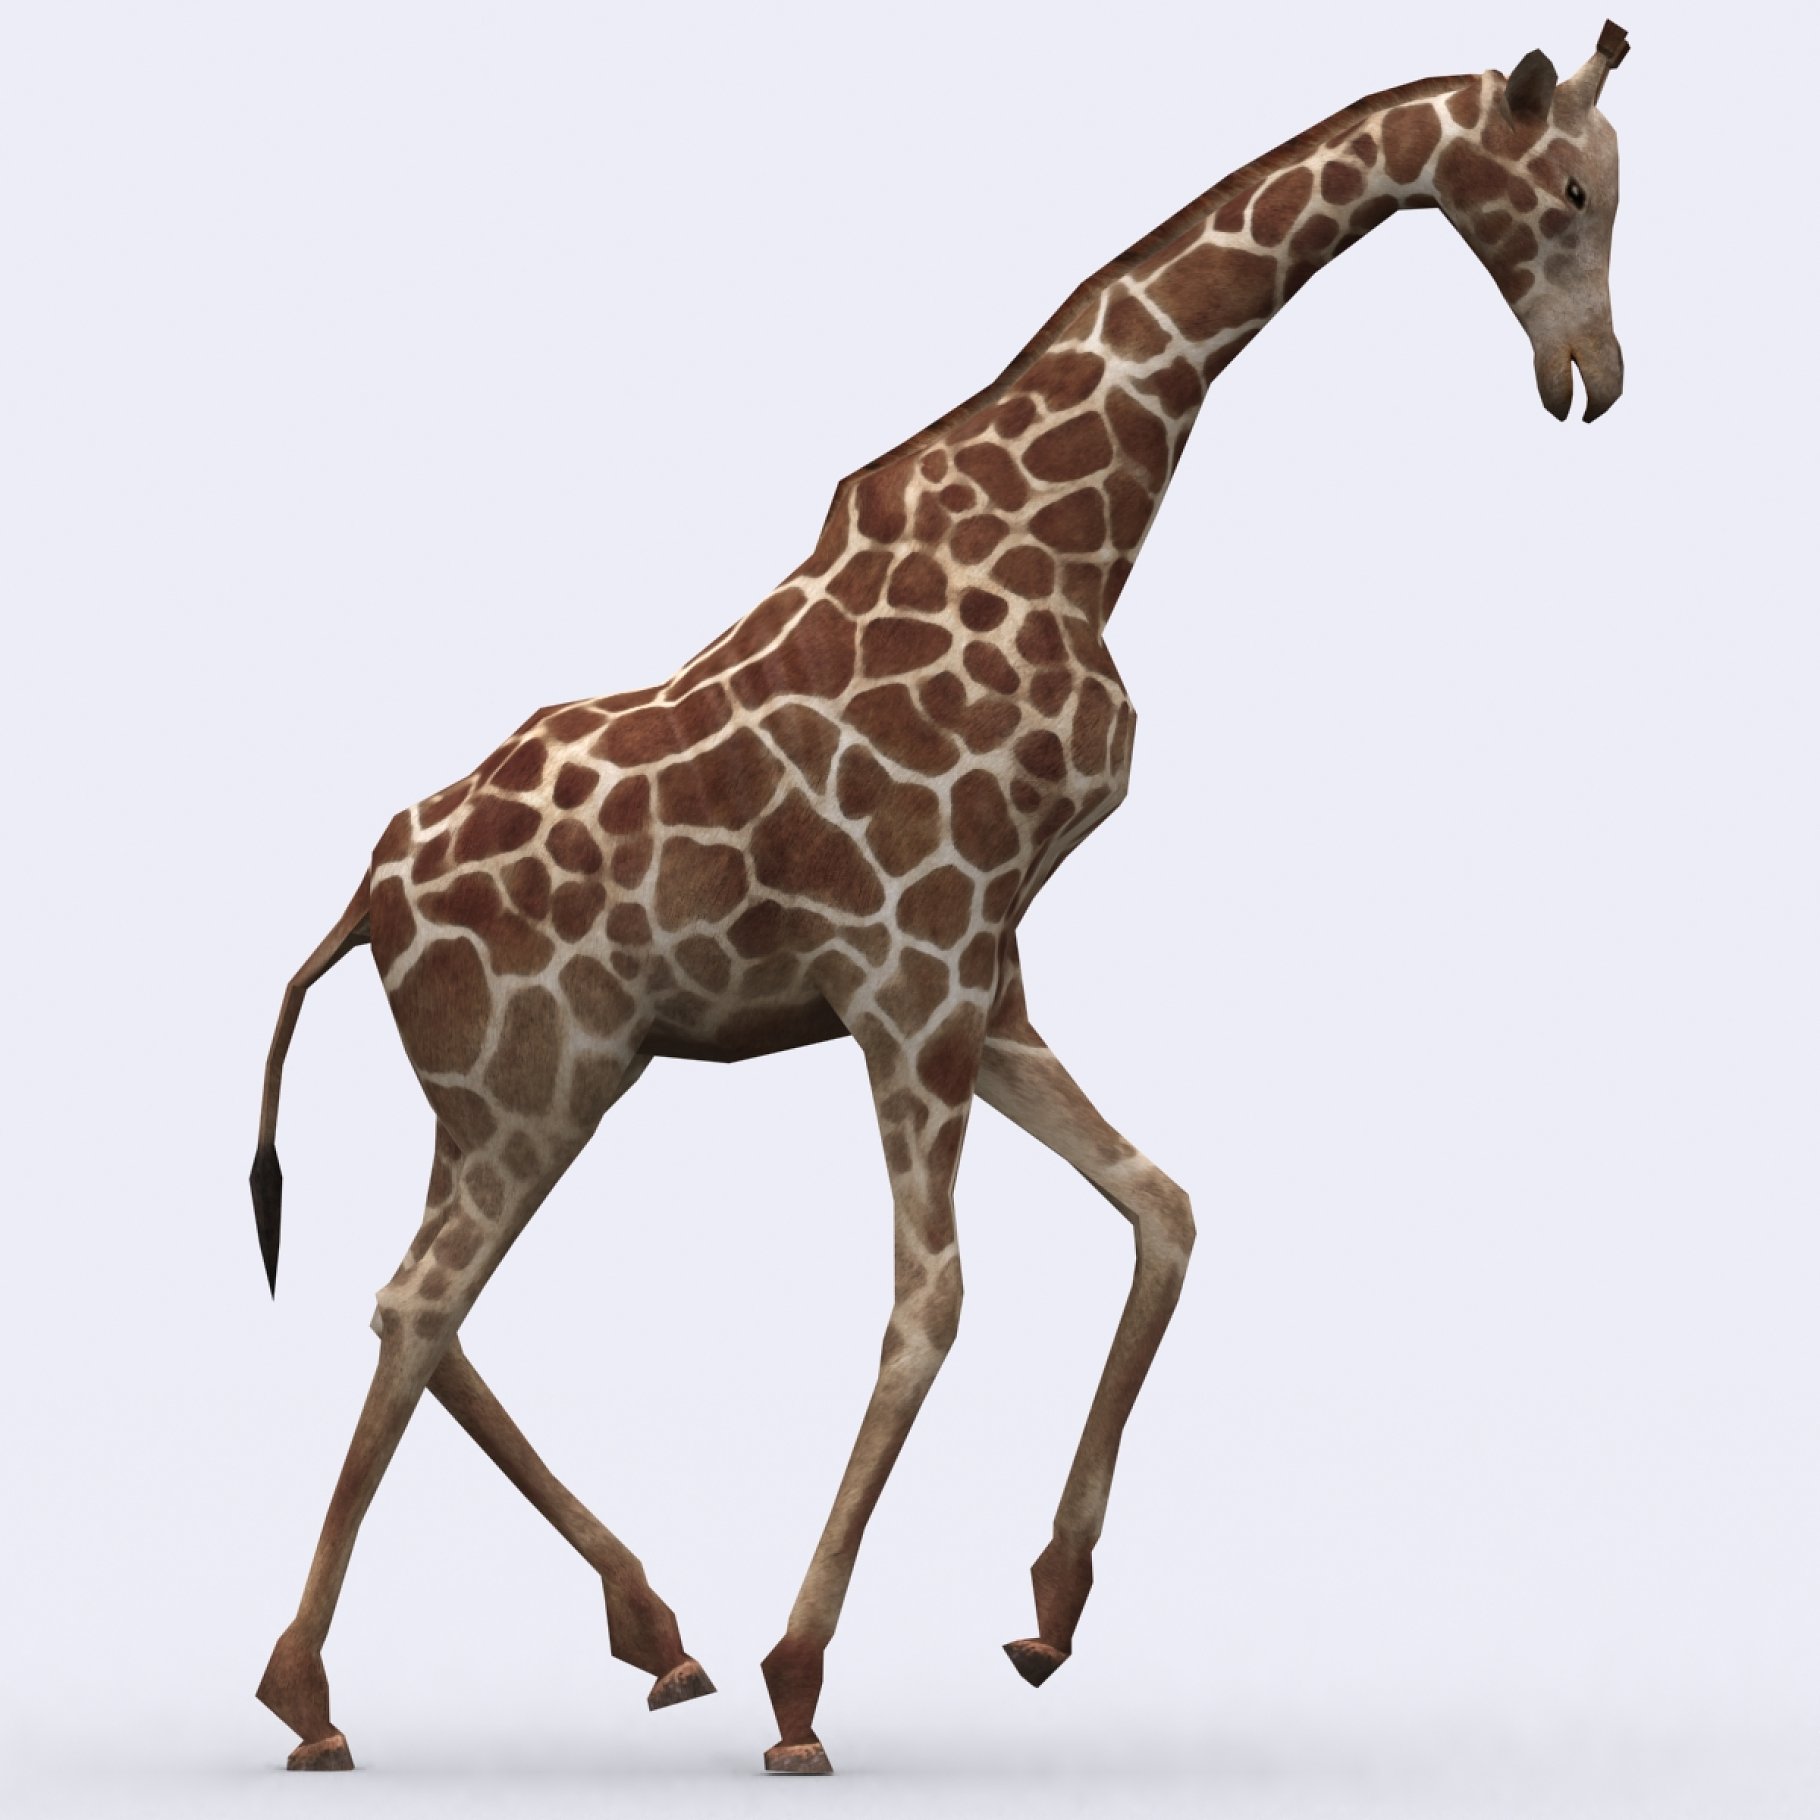 3Drt - Safari animals - Giraffe.